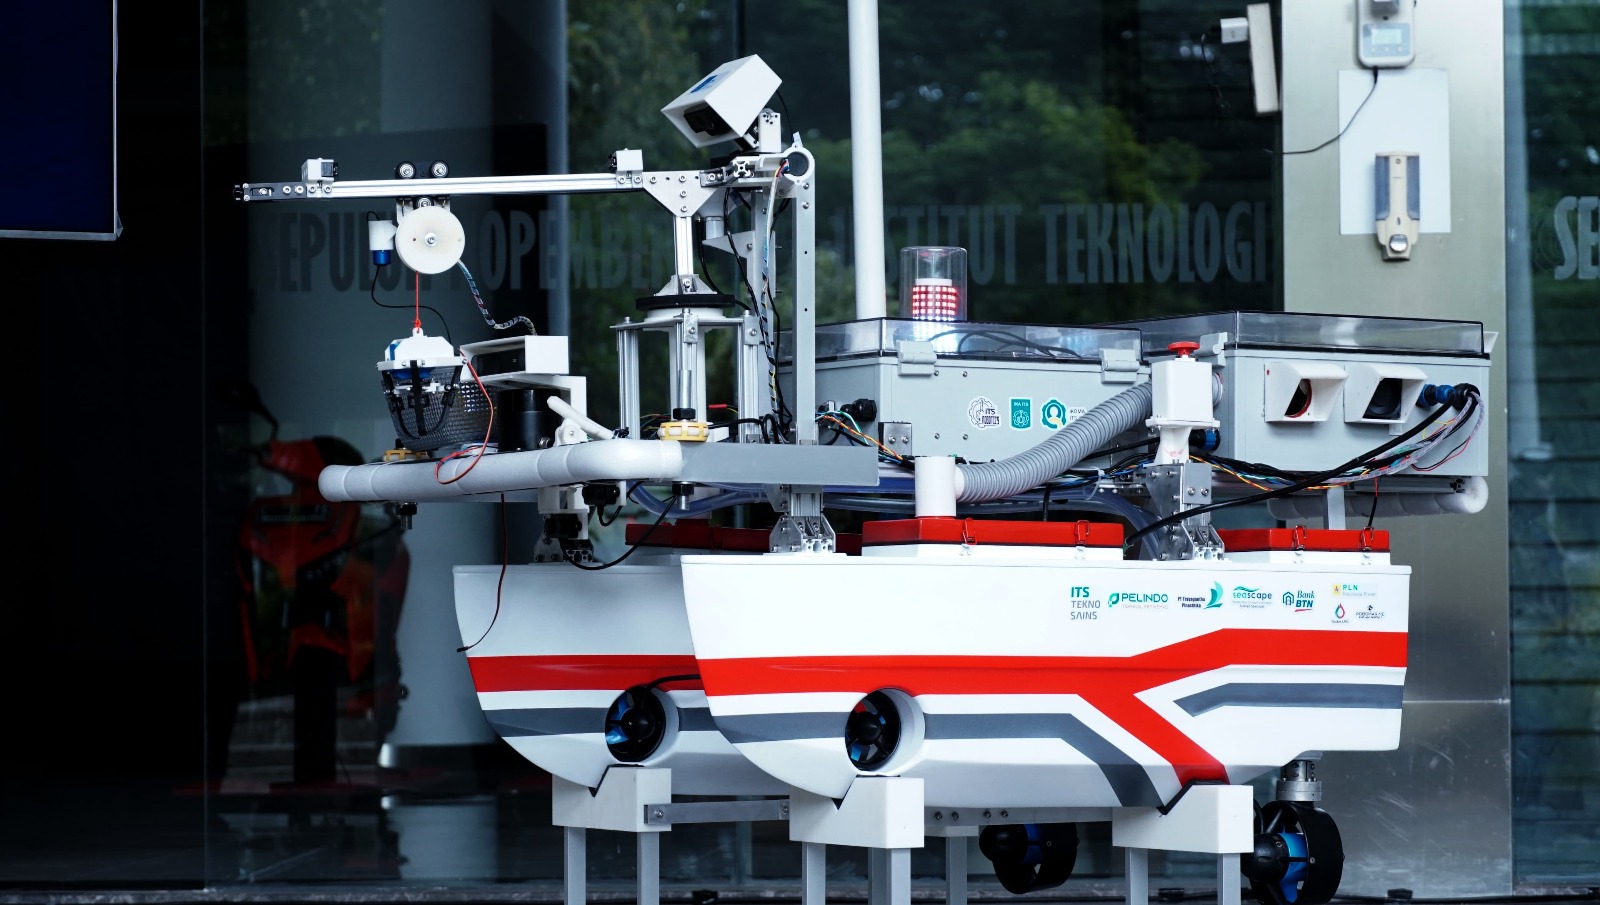 Kapal Dengan Sistem Autonomous Surface Vehicle Asv Milik Barunastra Its Nala Proteus 2.0 Yang Dipresentasikan Dalam Neva Maritime Congress